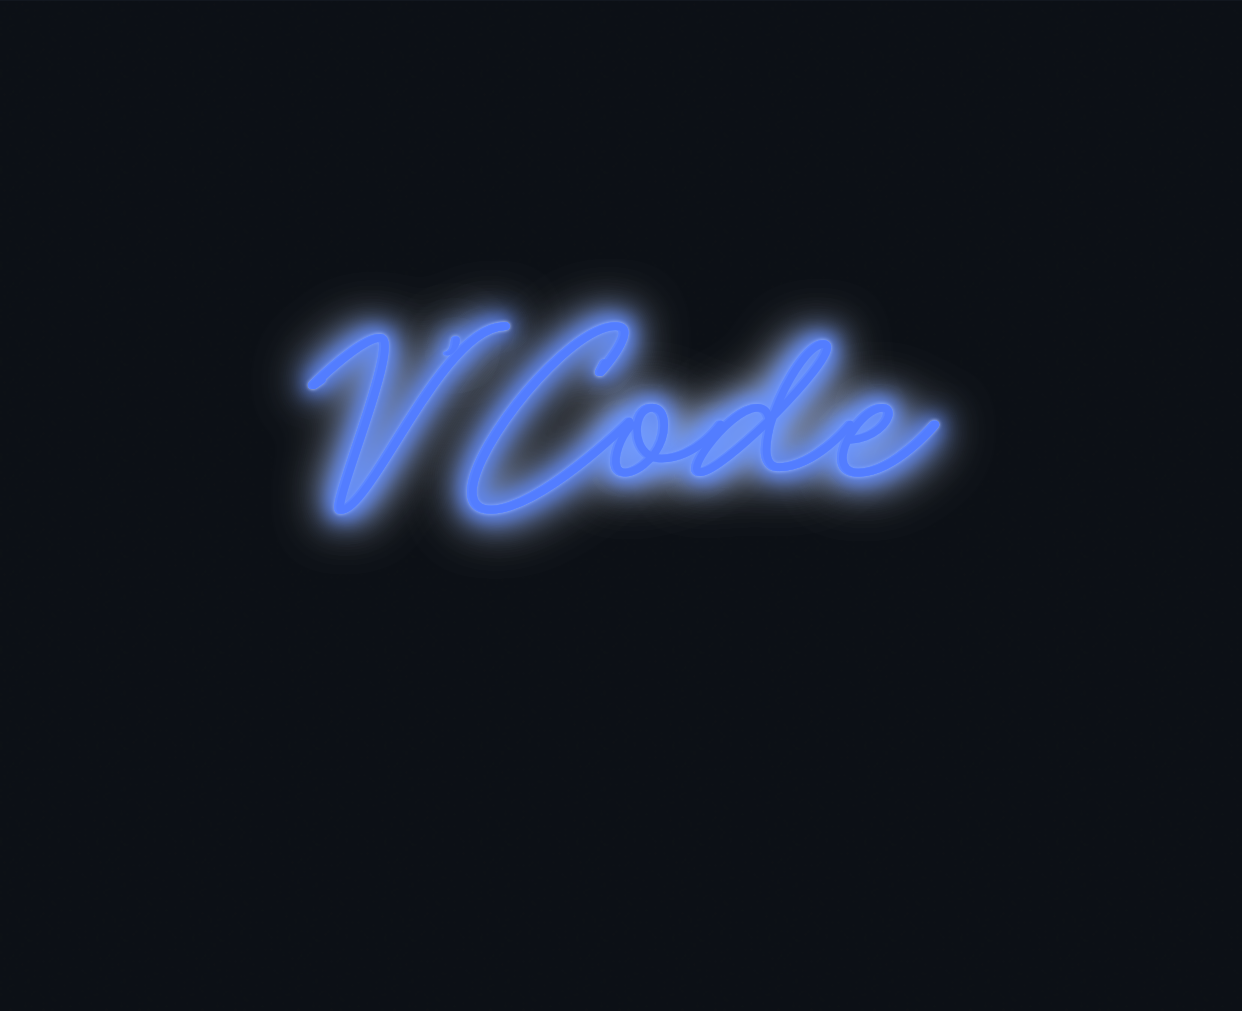 Custom neon sign - V’Code